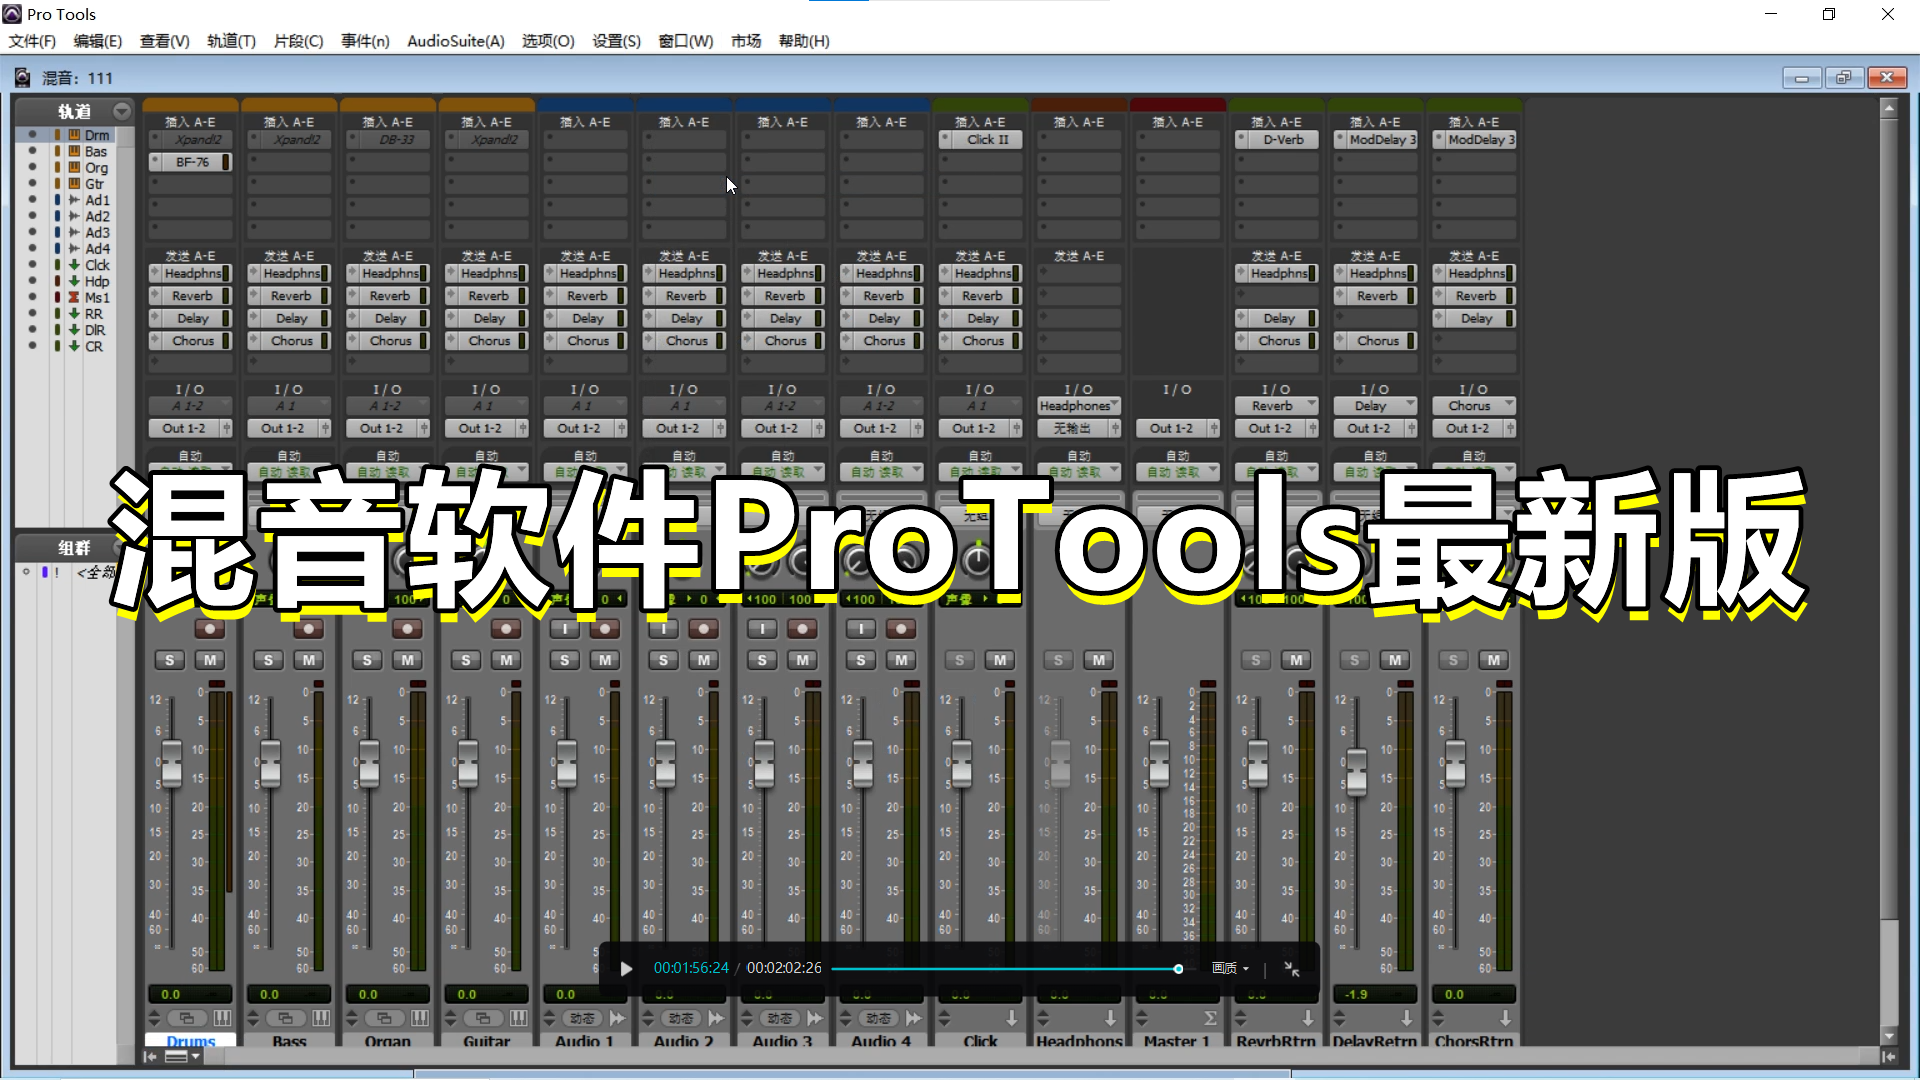 混音最强宿主软件ProTools最新版 + 配套虚拟声卡 + Protools录音与混音必备手册 + 使用教程 – ProTools软件  MacOS版